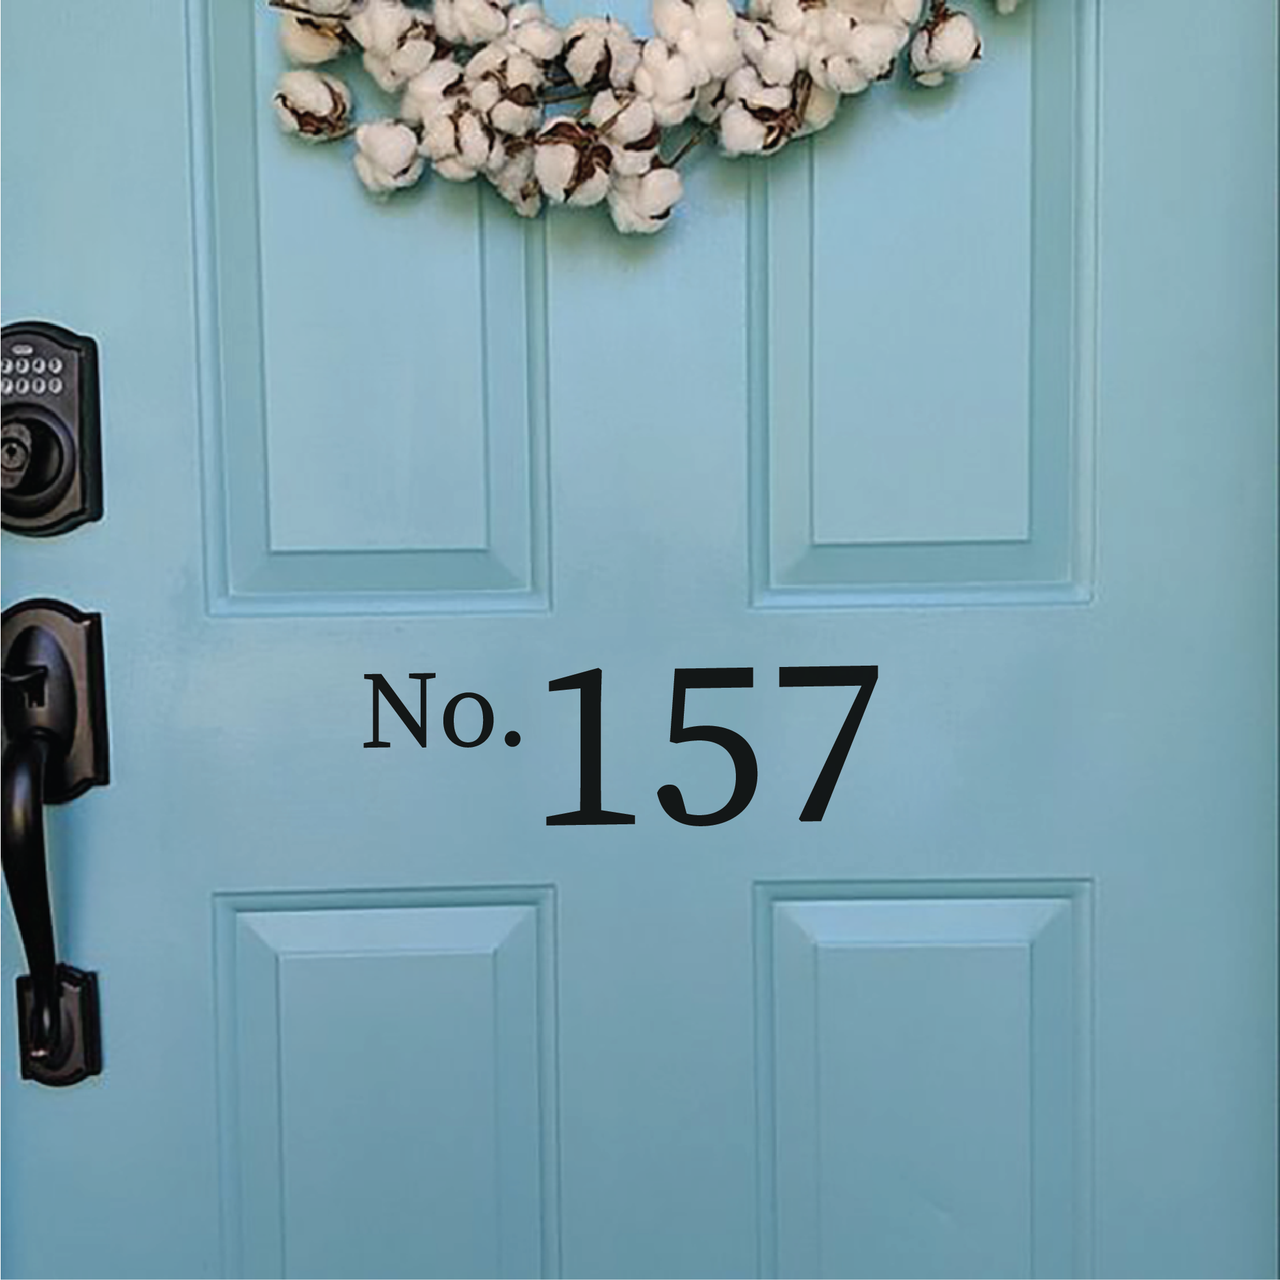 House Number Door Decal